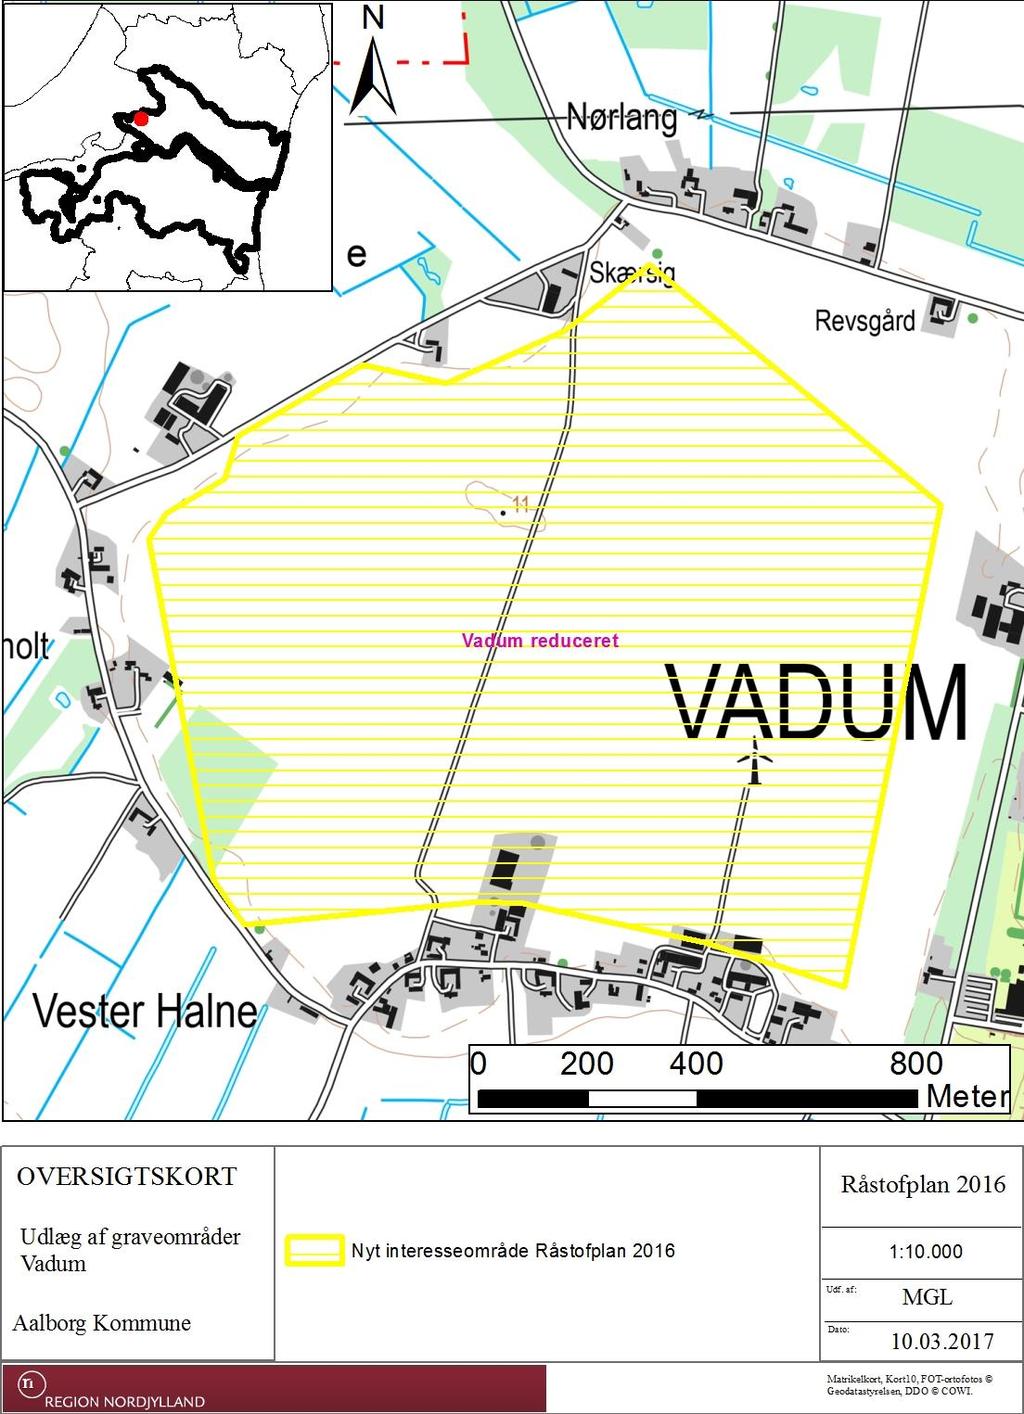 5.3.10 Vadum, Aalborg Kommune Det foreslåede interesseområde Vadum dækker i alt ca. 132 ha, og ligger i Aalborg Kommune i det åbne landbrugsland nord for Vadum. Råstofforekomsten består af sand.